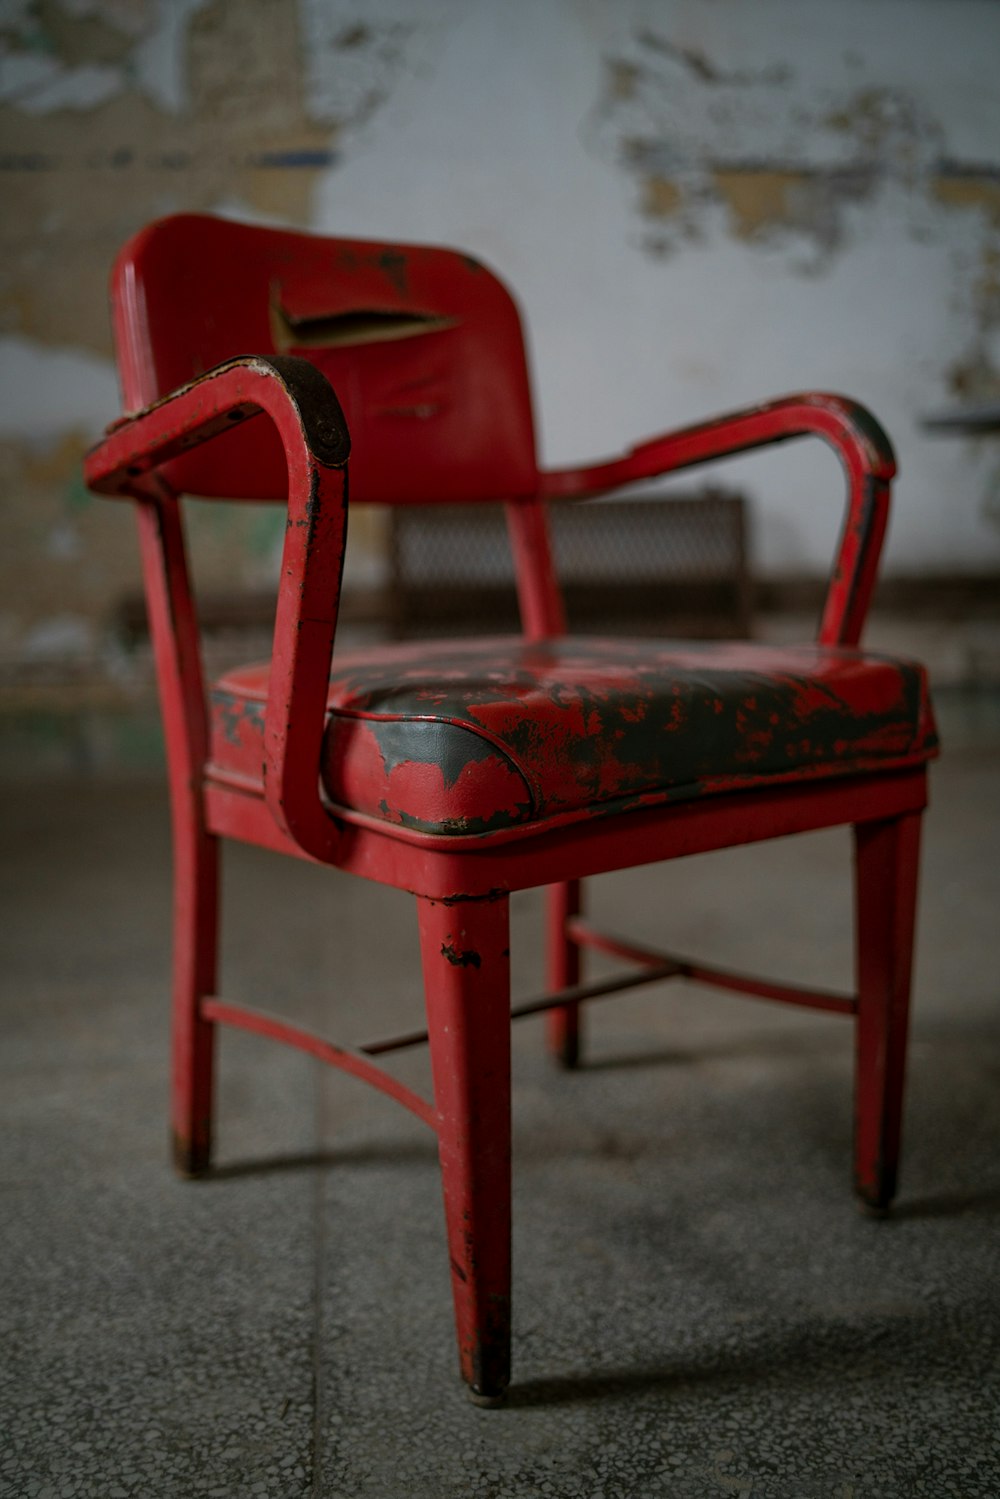 灰色のコンクリートの床に赤いプラスチック製の肘掛け椅子